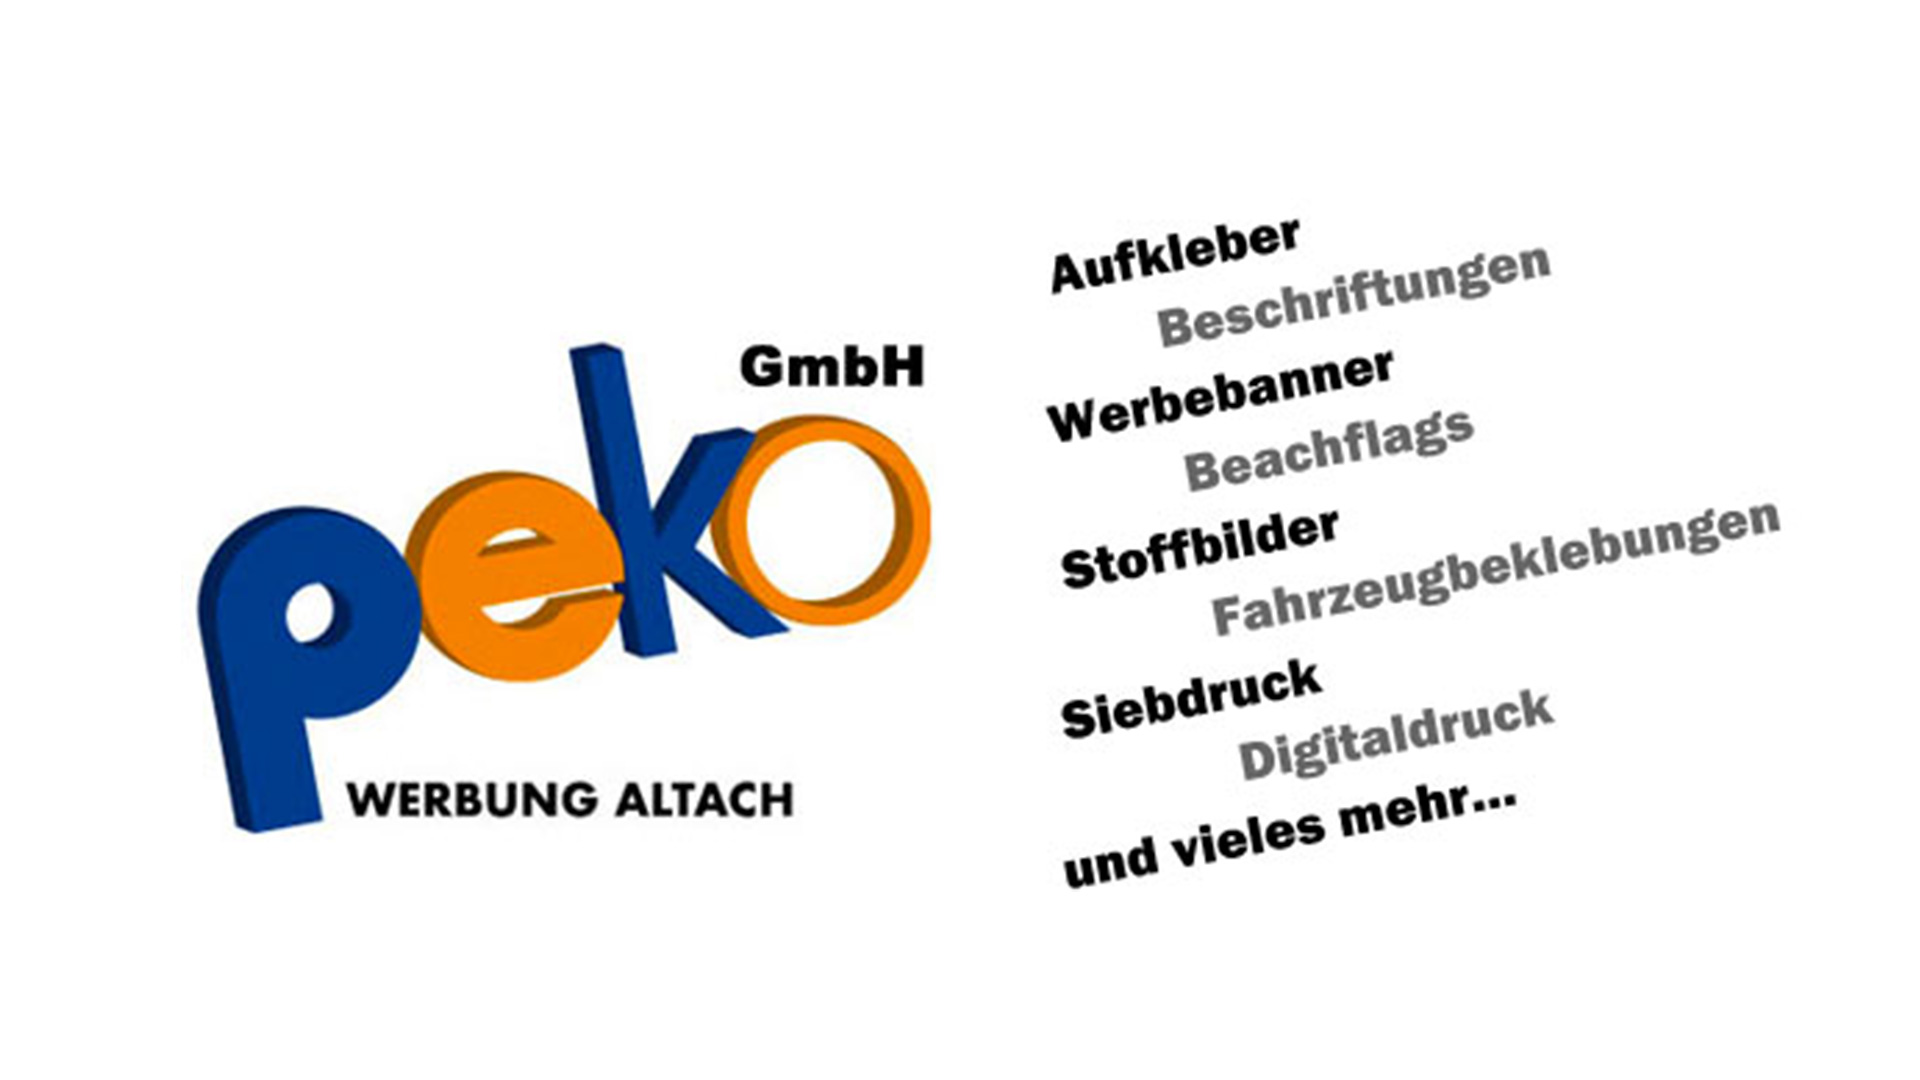 Peko Logo